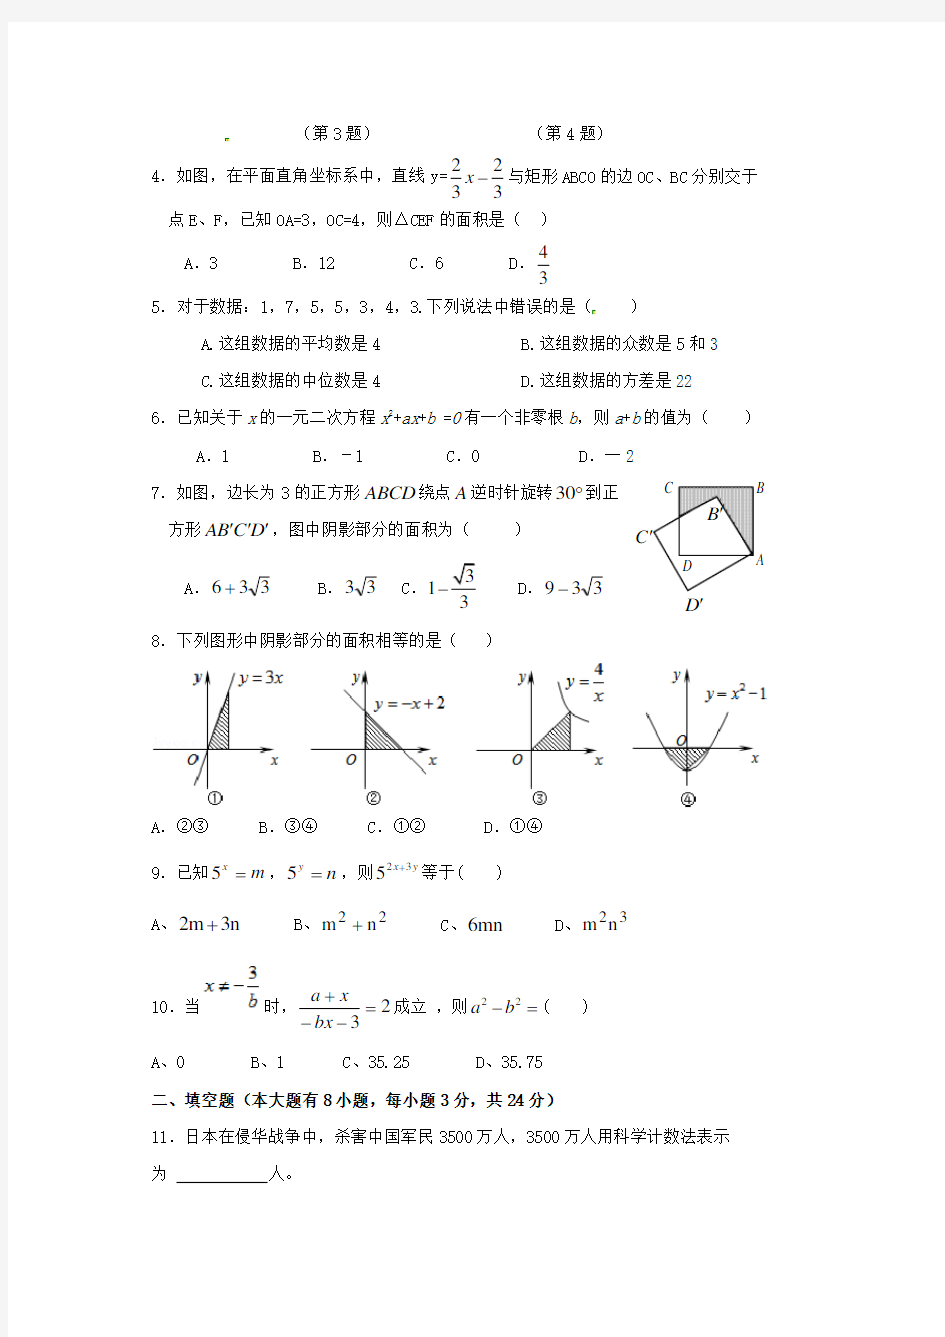 【2021年】湖南省中考数学真题预测2套(含答案)